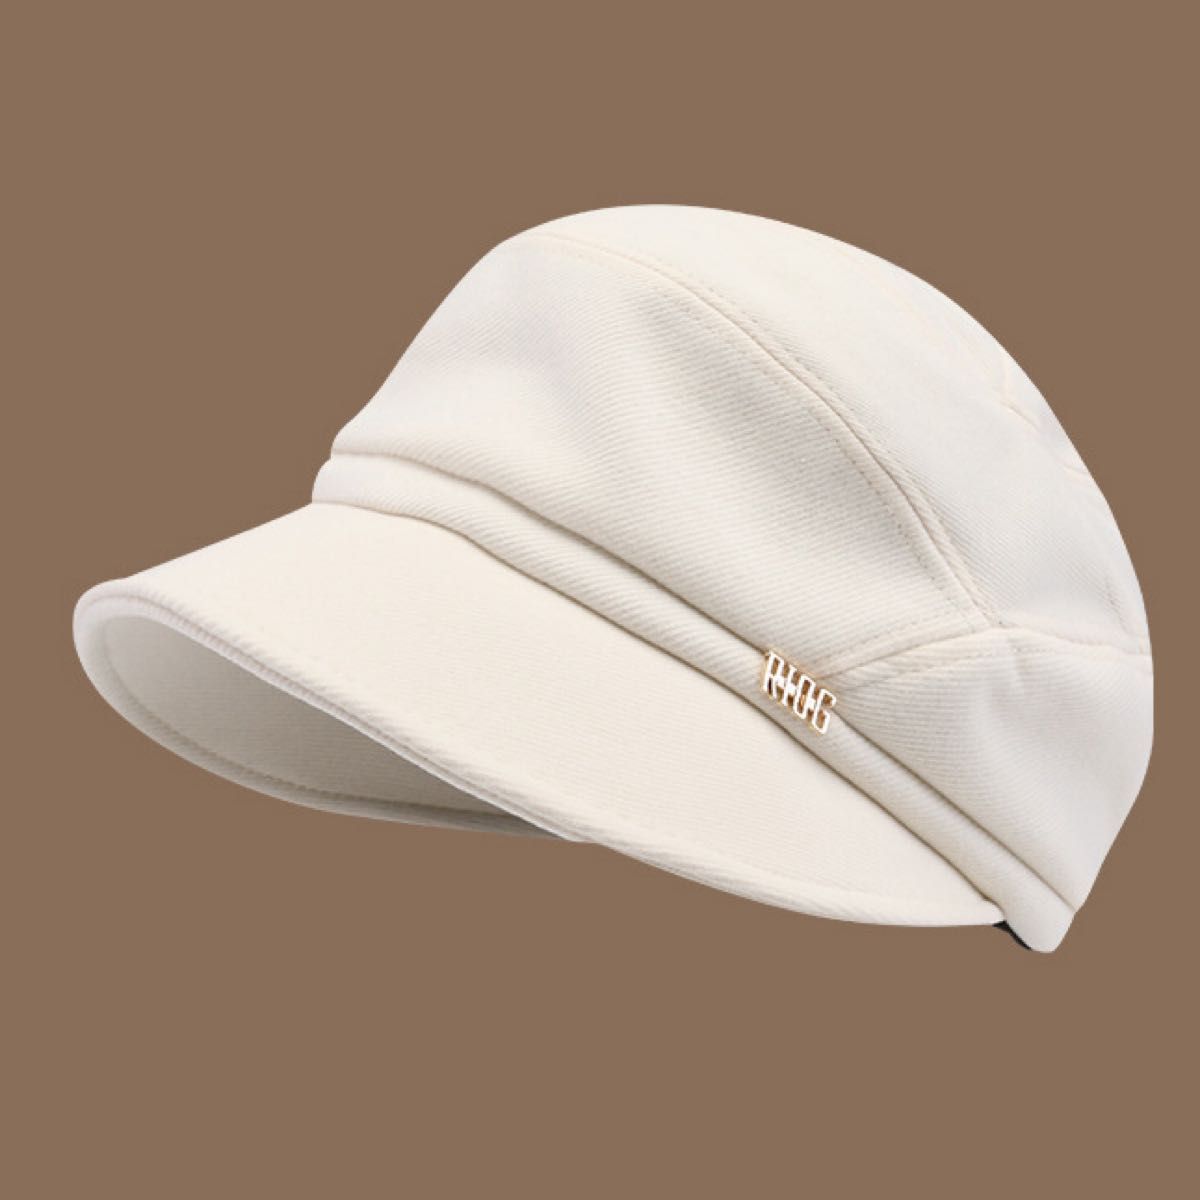 キャスケット 帽子UVカット 小顔 効果 帽子レディース  フリーサイズ 秋冬 防寒 保暖性 帽子 紫外線対策